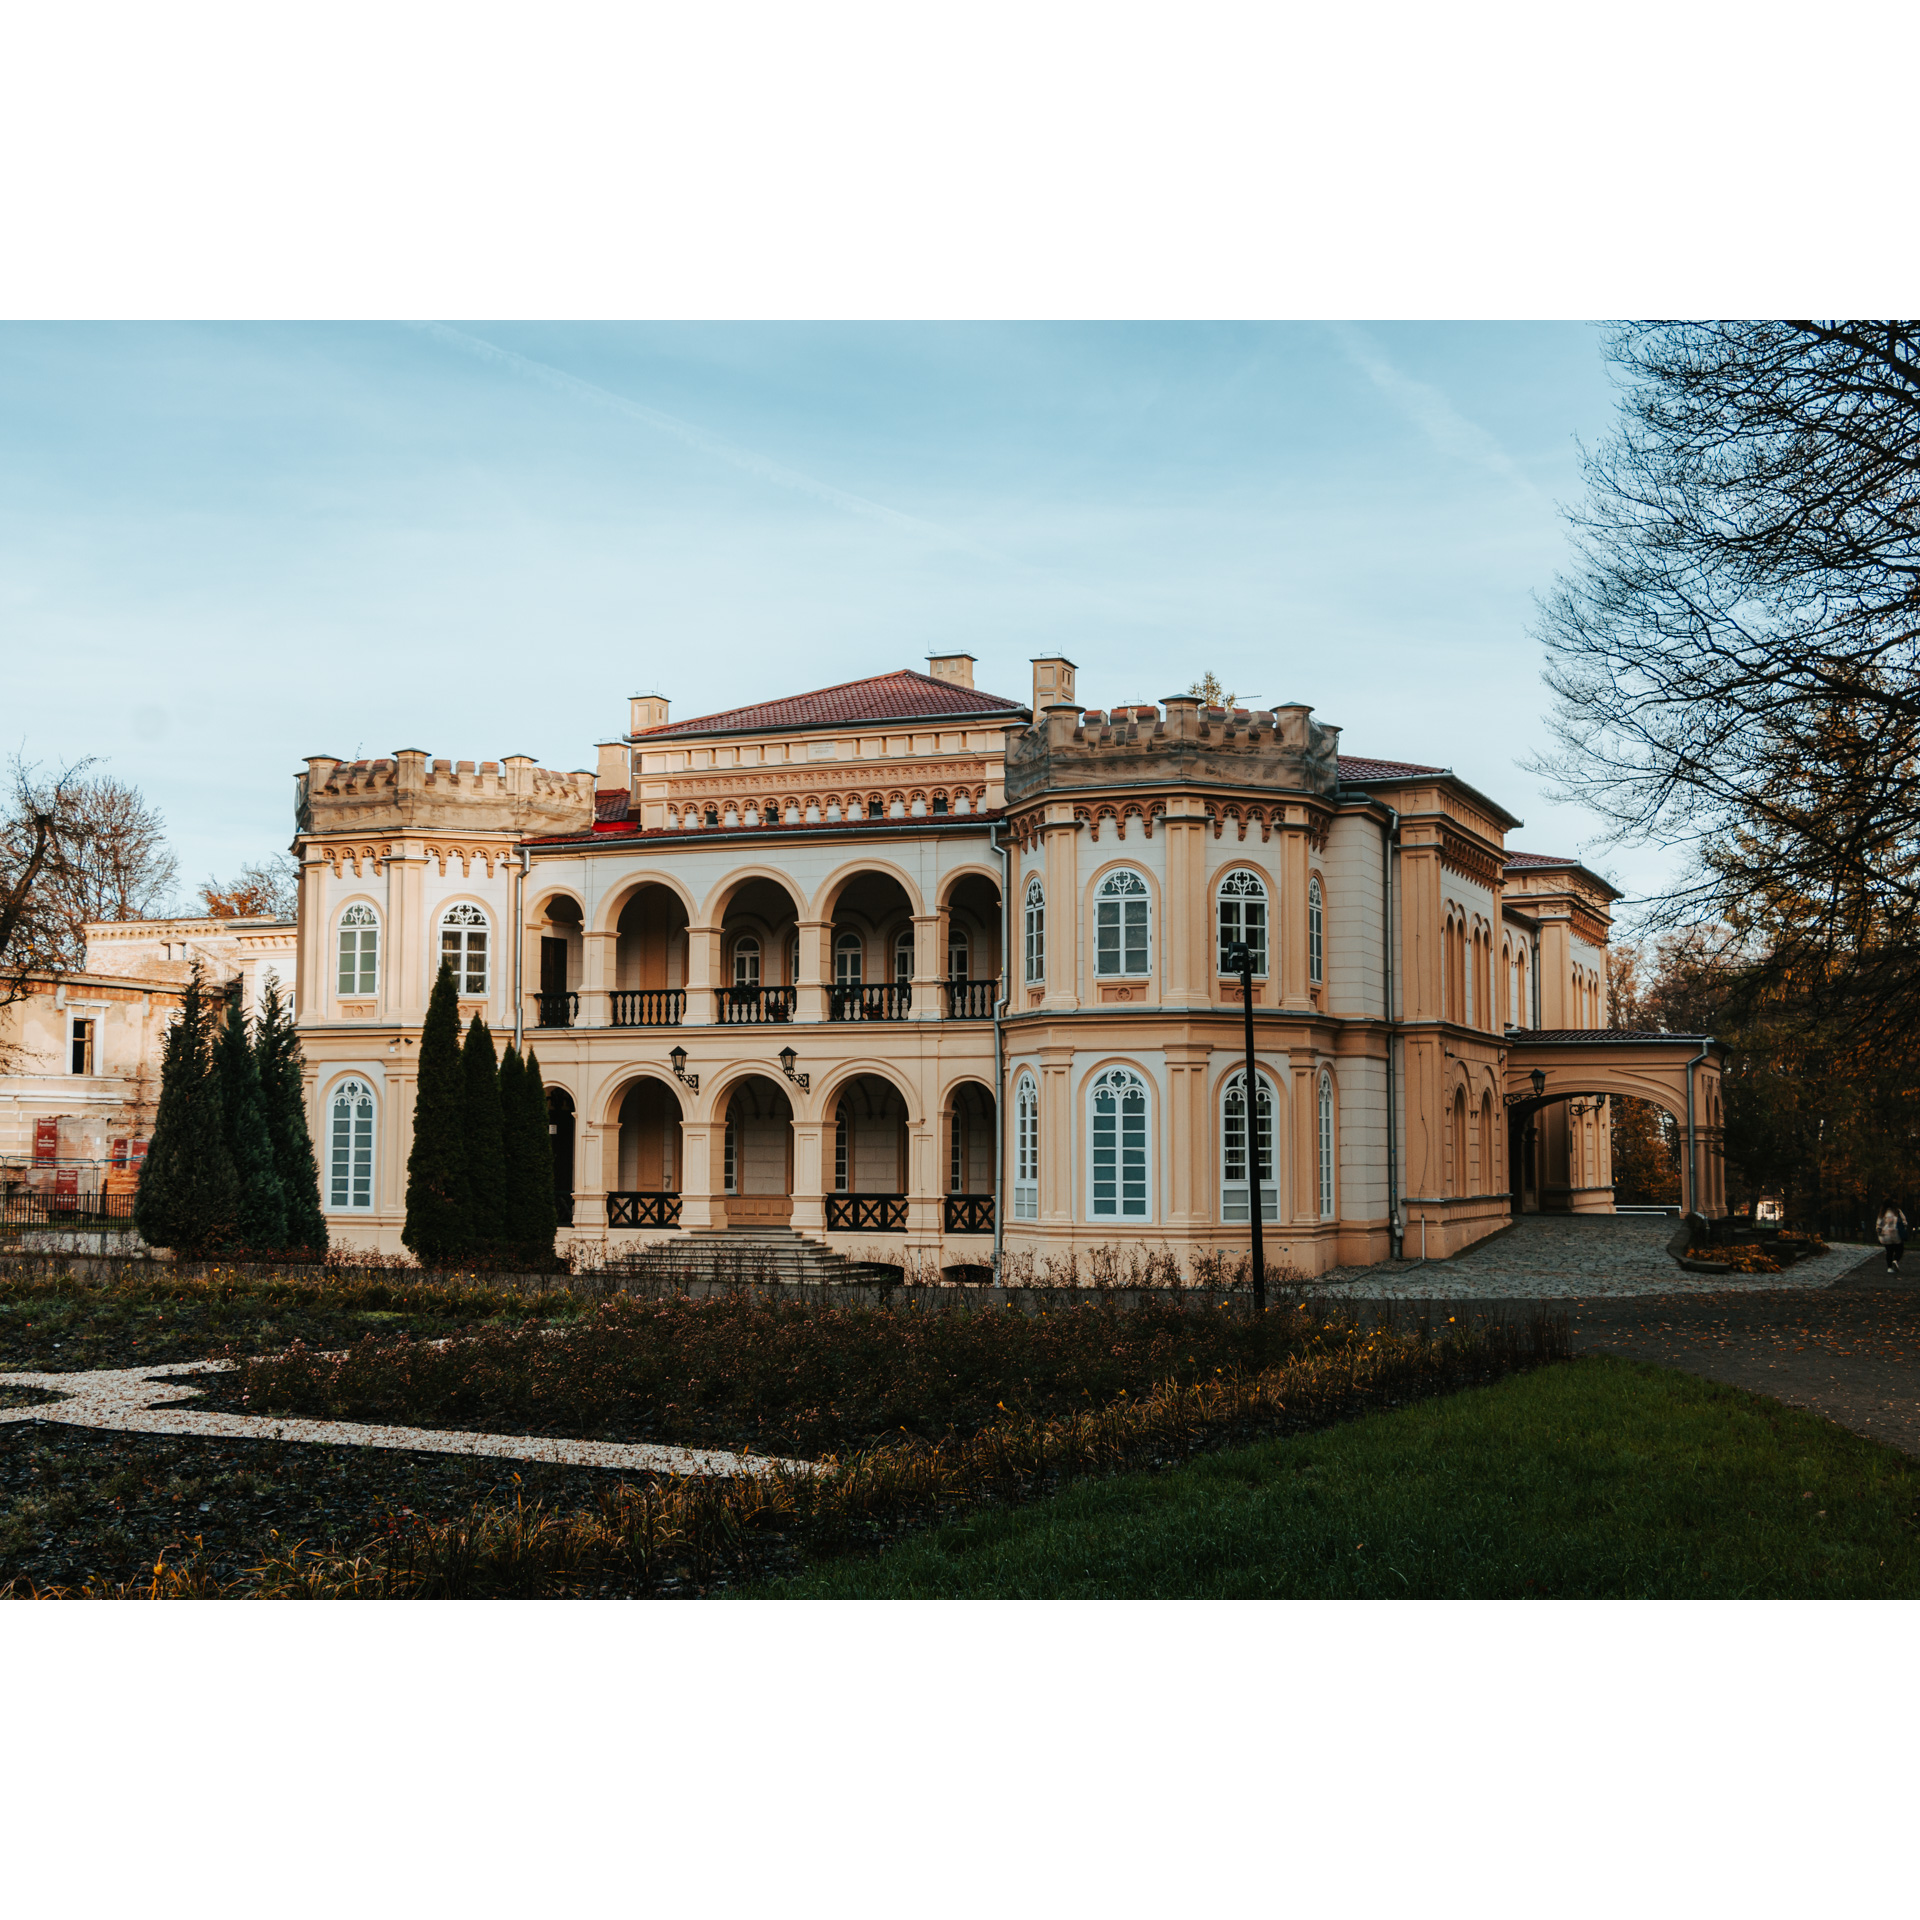 Zespół pałacowo-parkowy w Tyczynie. Piękny pałac z parkiem w stylu włoskim